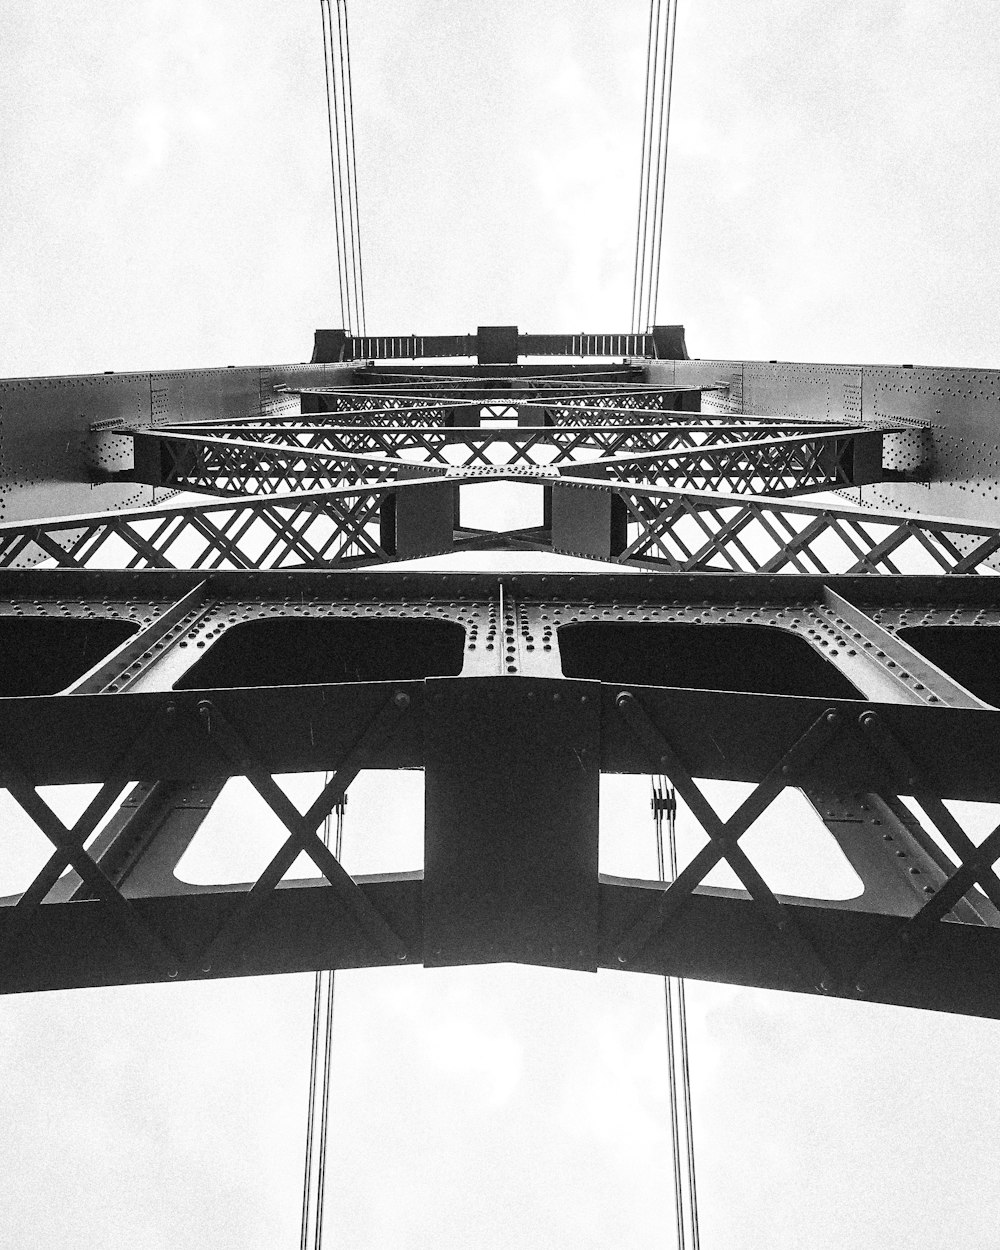 Una foto en blanco y negro de la parte superior de un puente